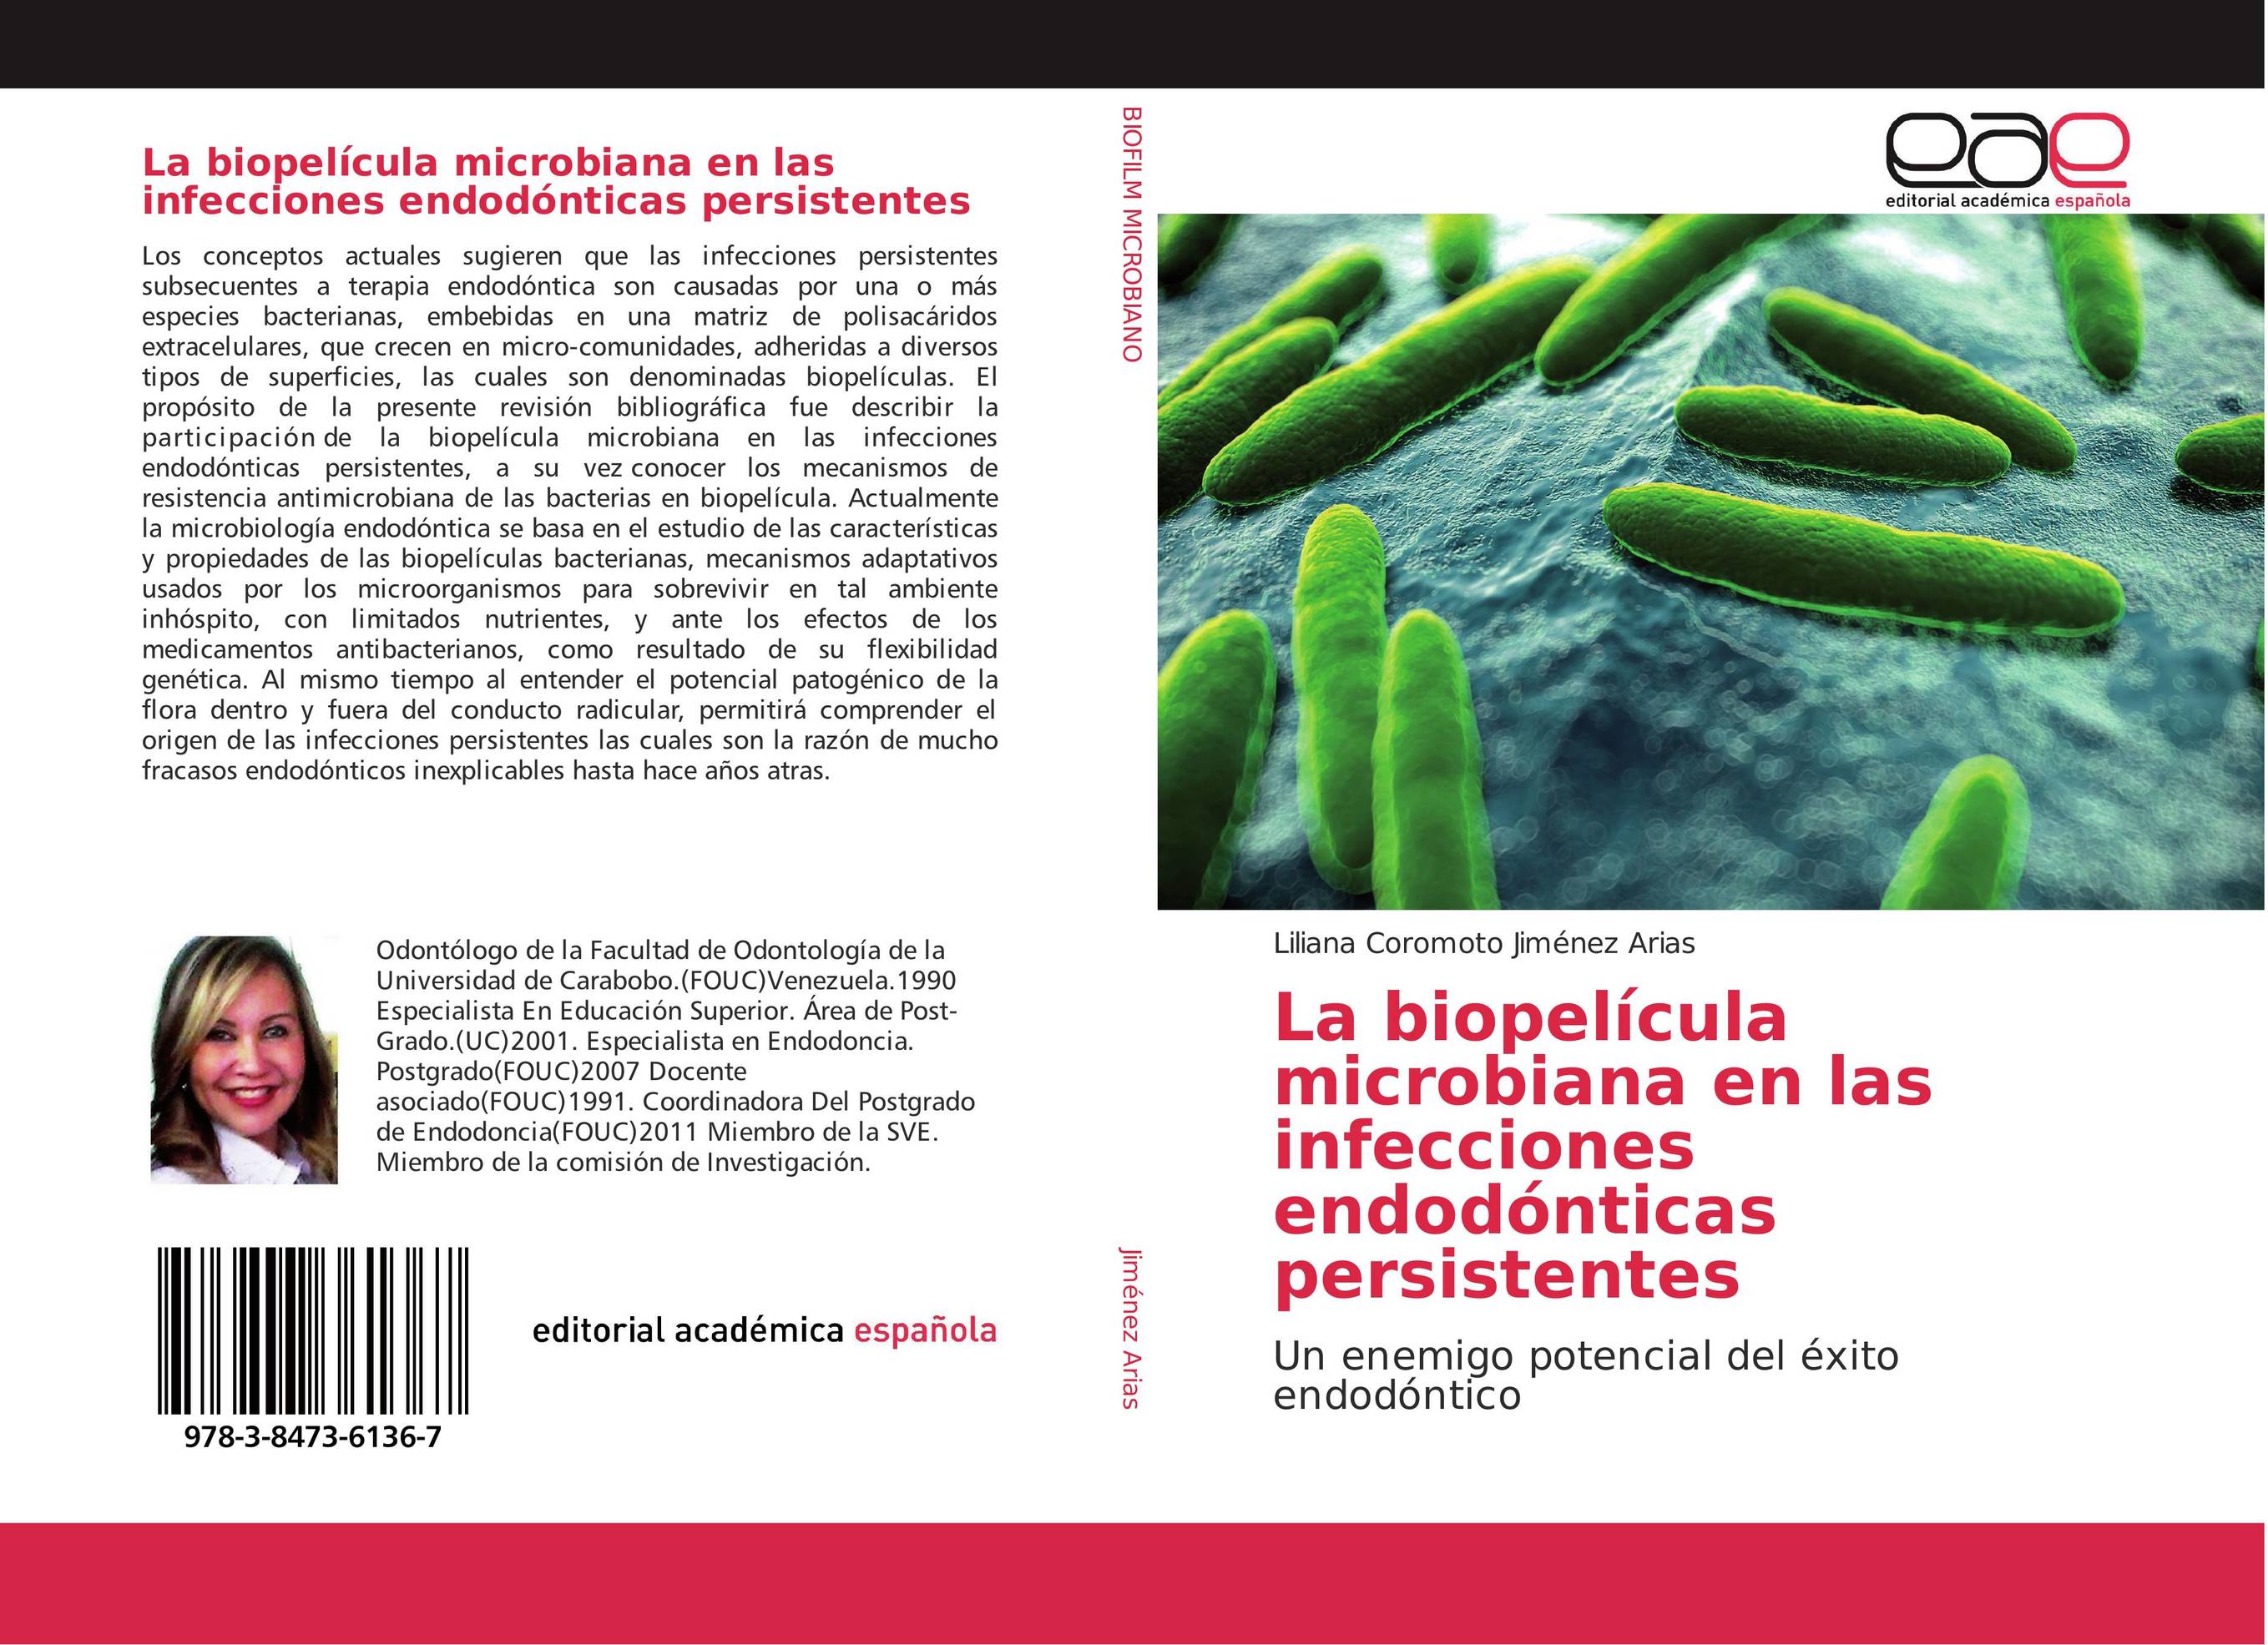 La biopelícula microbiana en las infecciones endodónticas persistentes